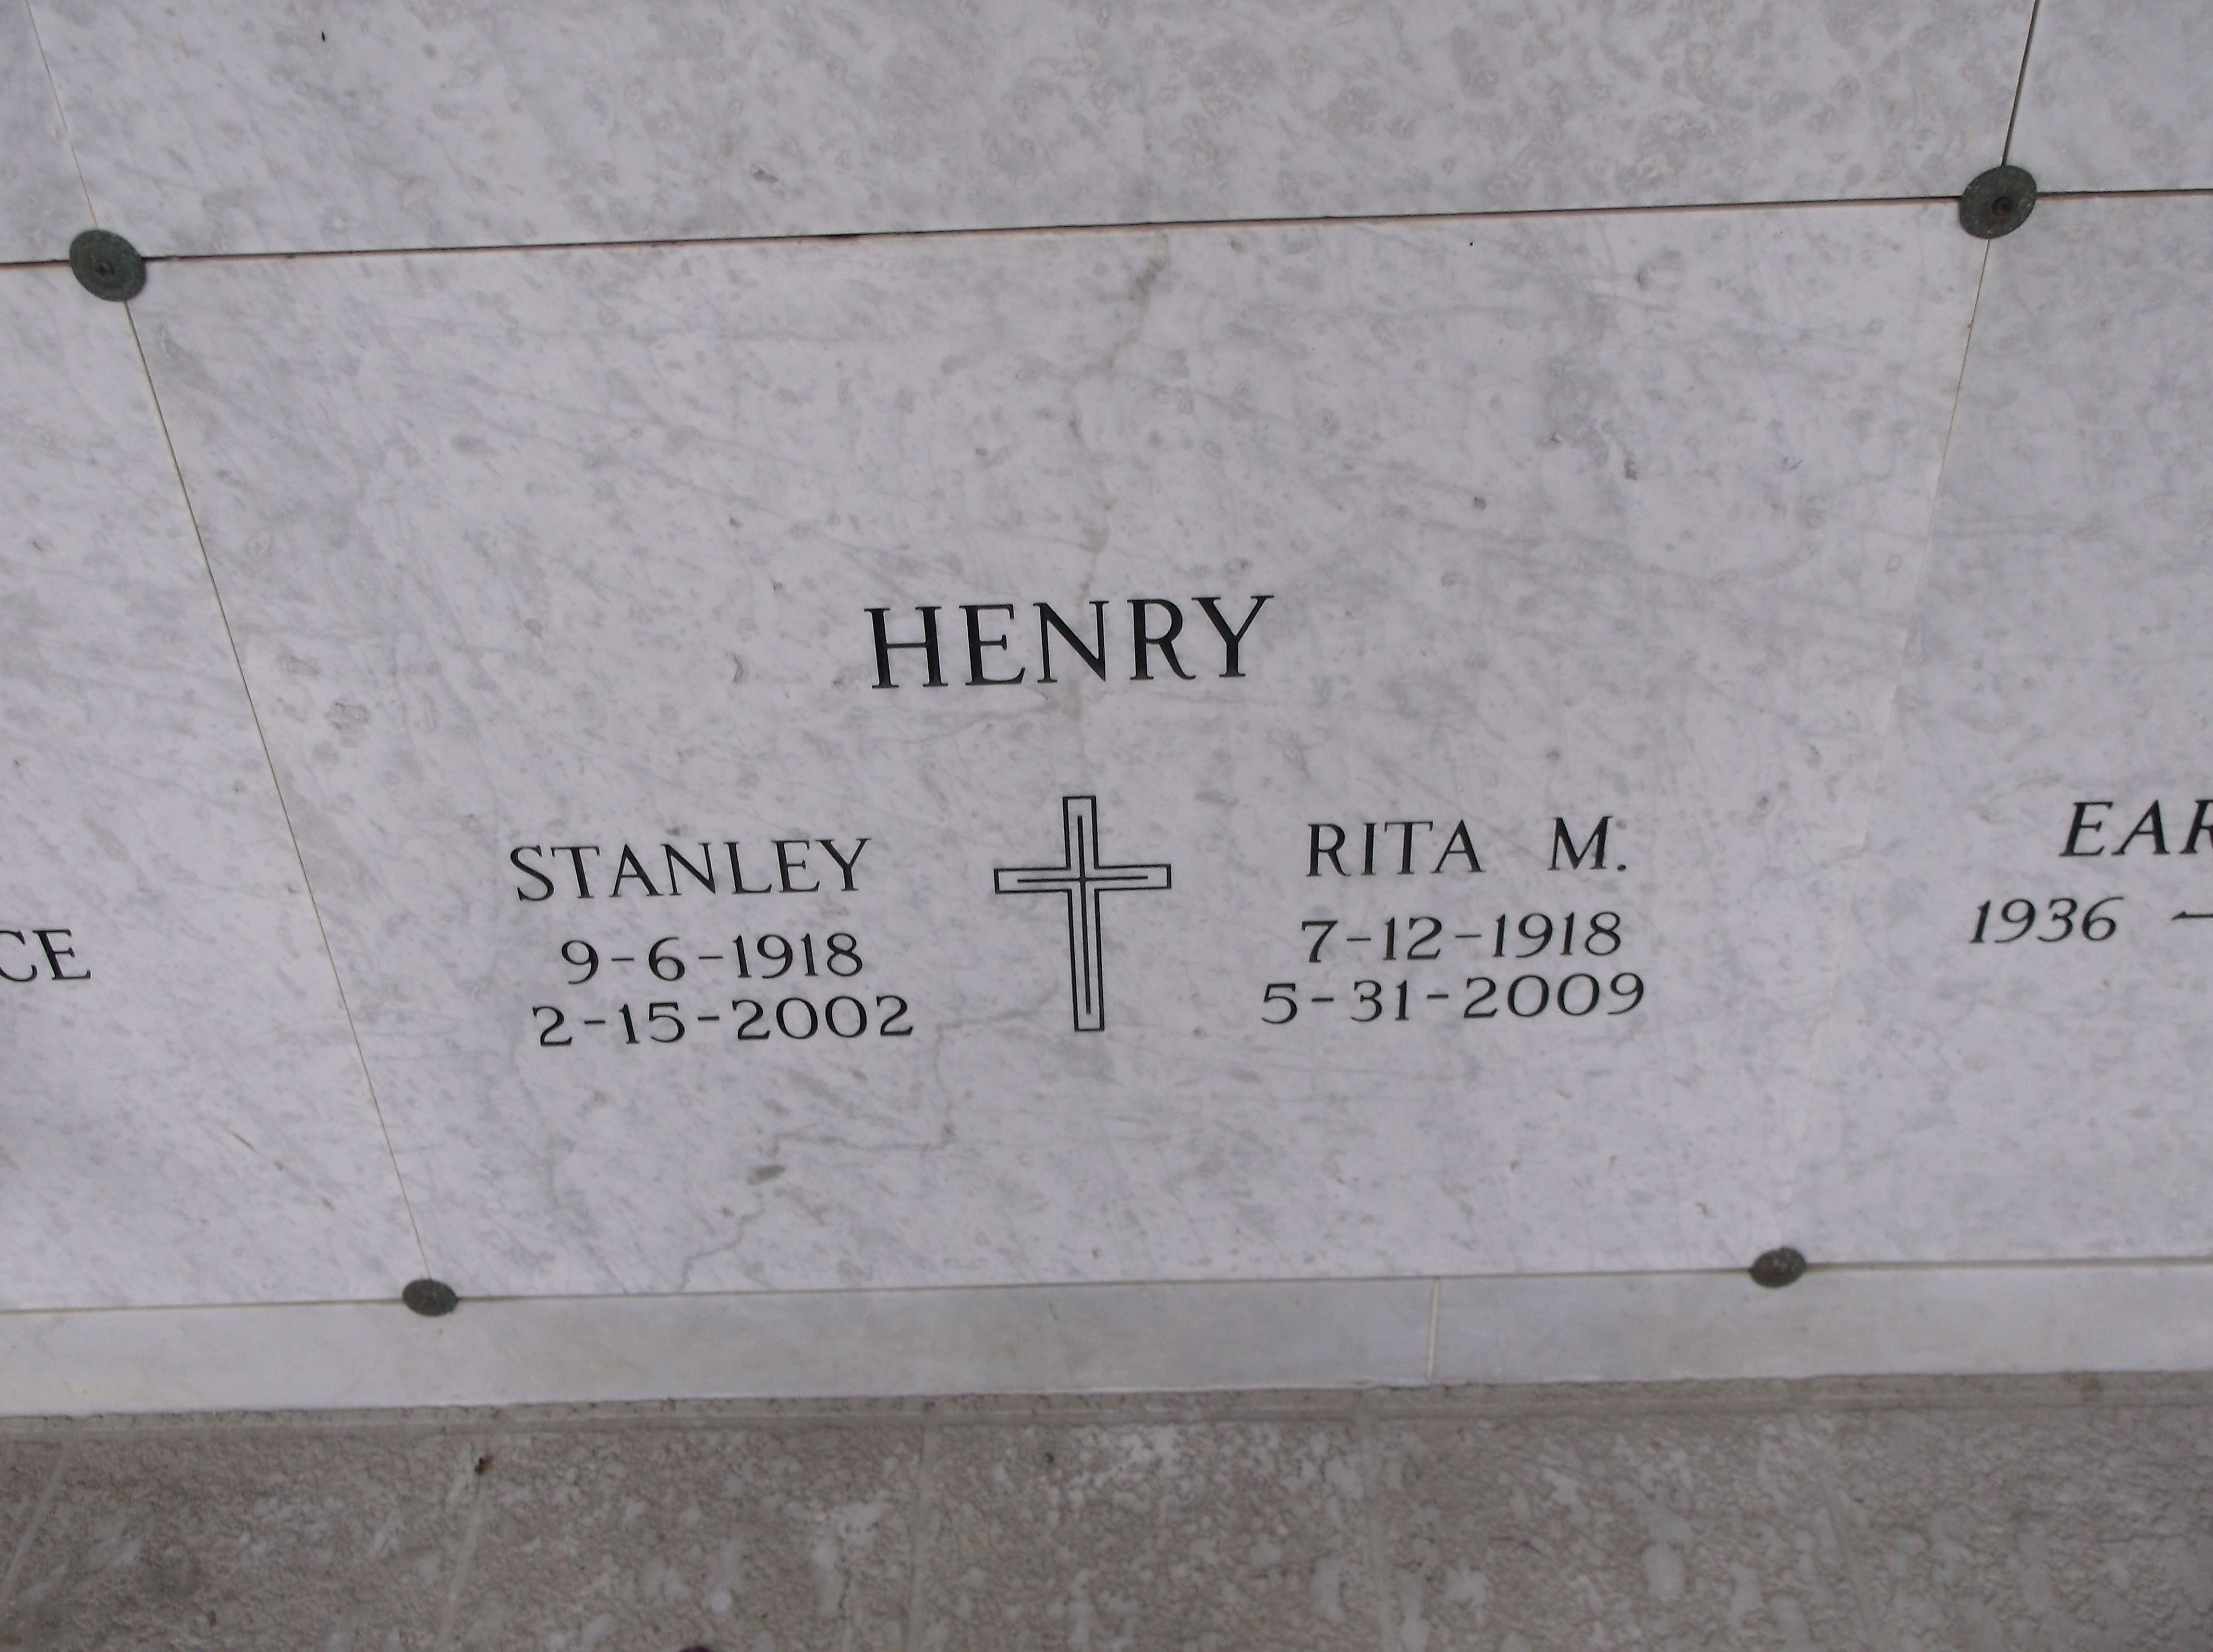 Stanley Henry